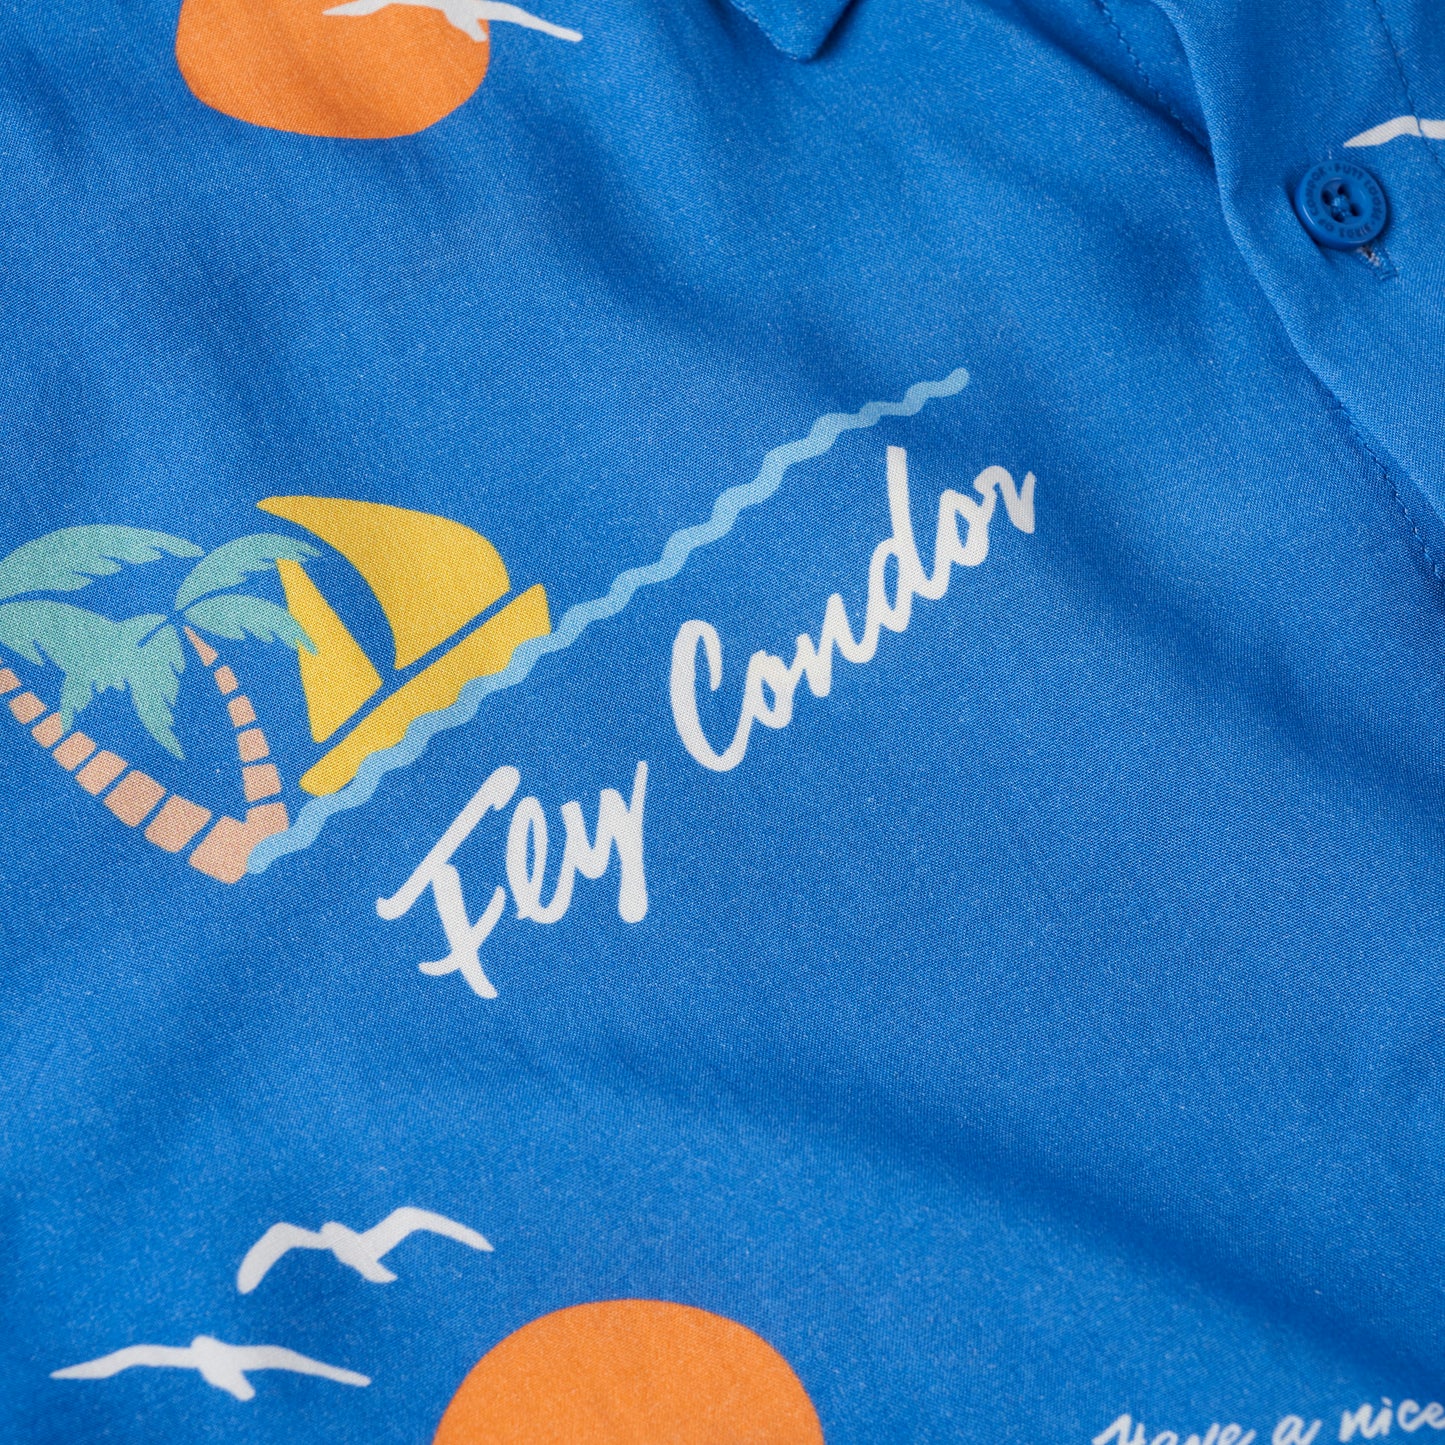 Fly Condor Shirt